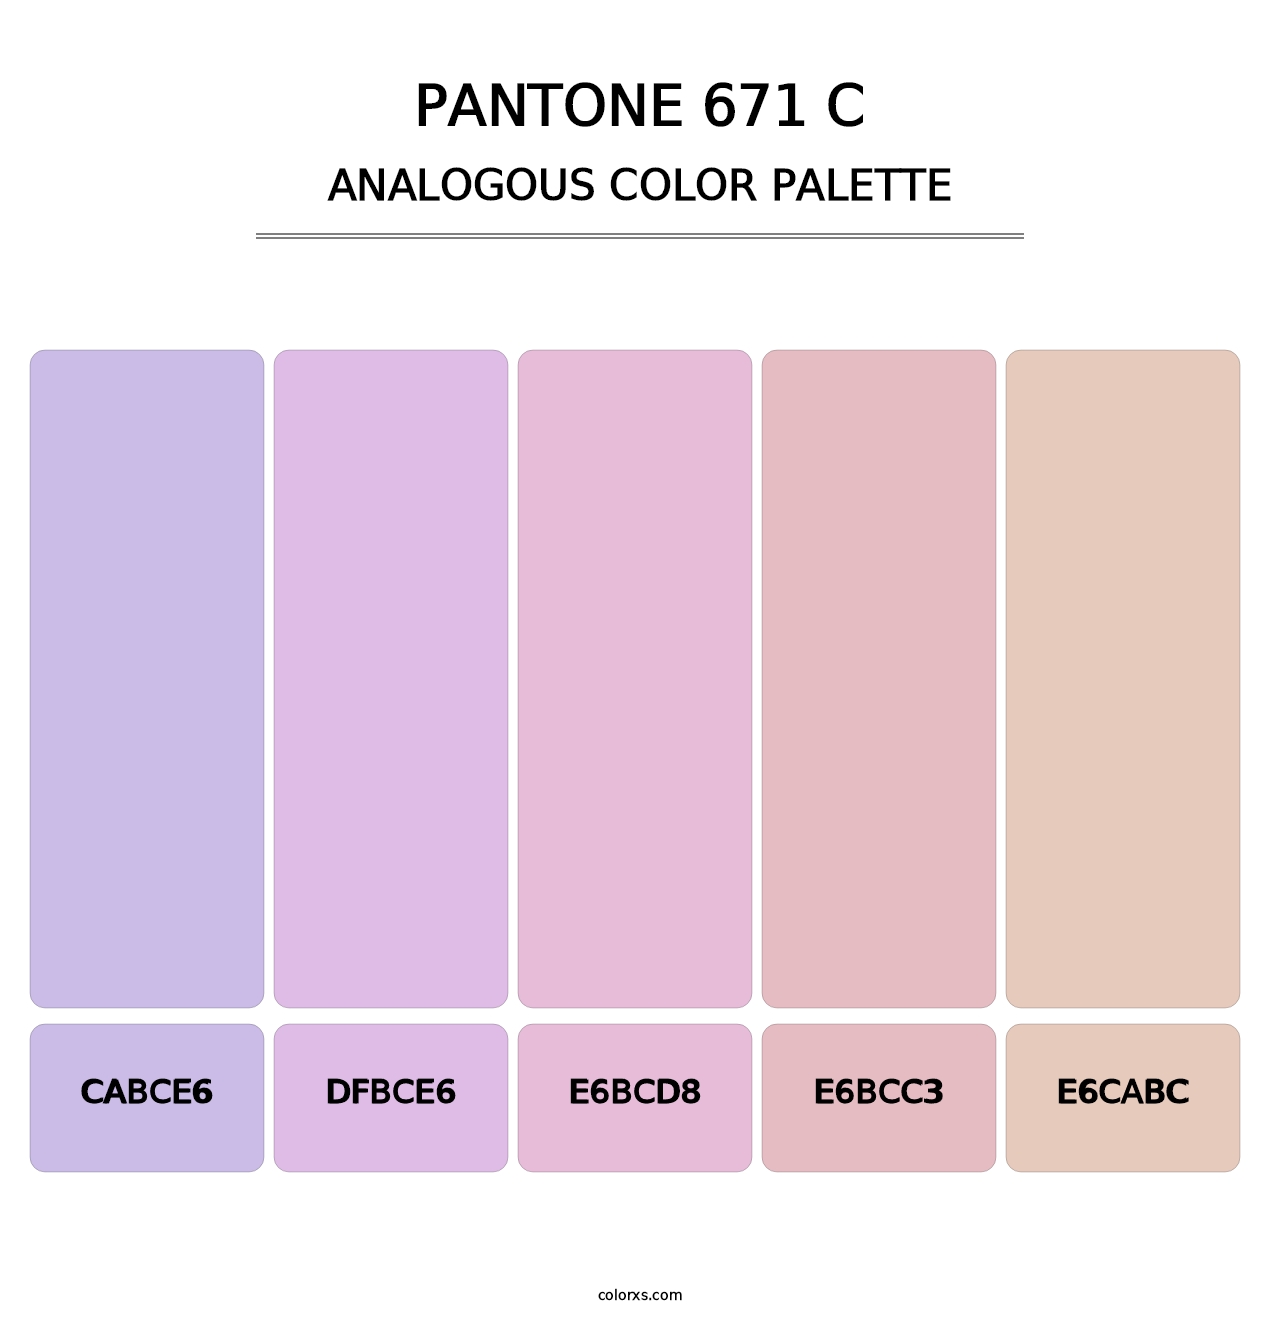 PANTONE 671 C - Analogous Color Palette